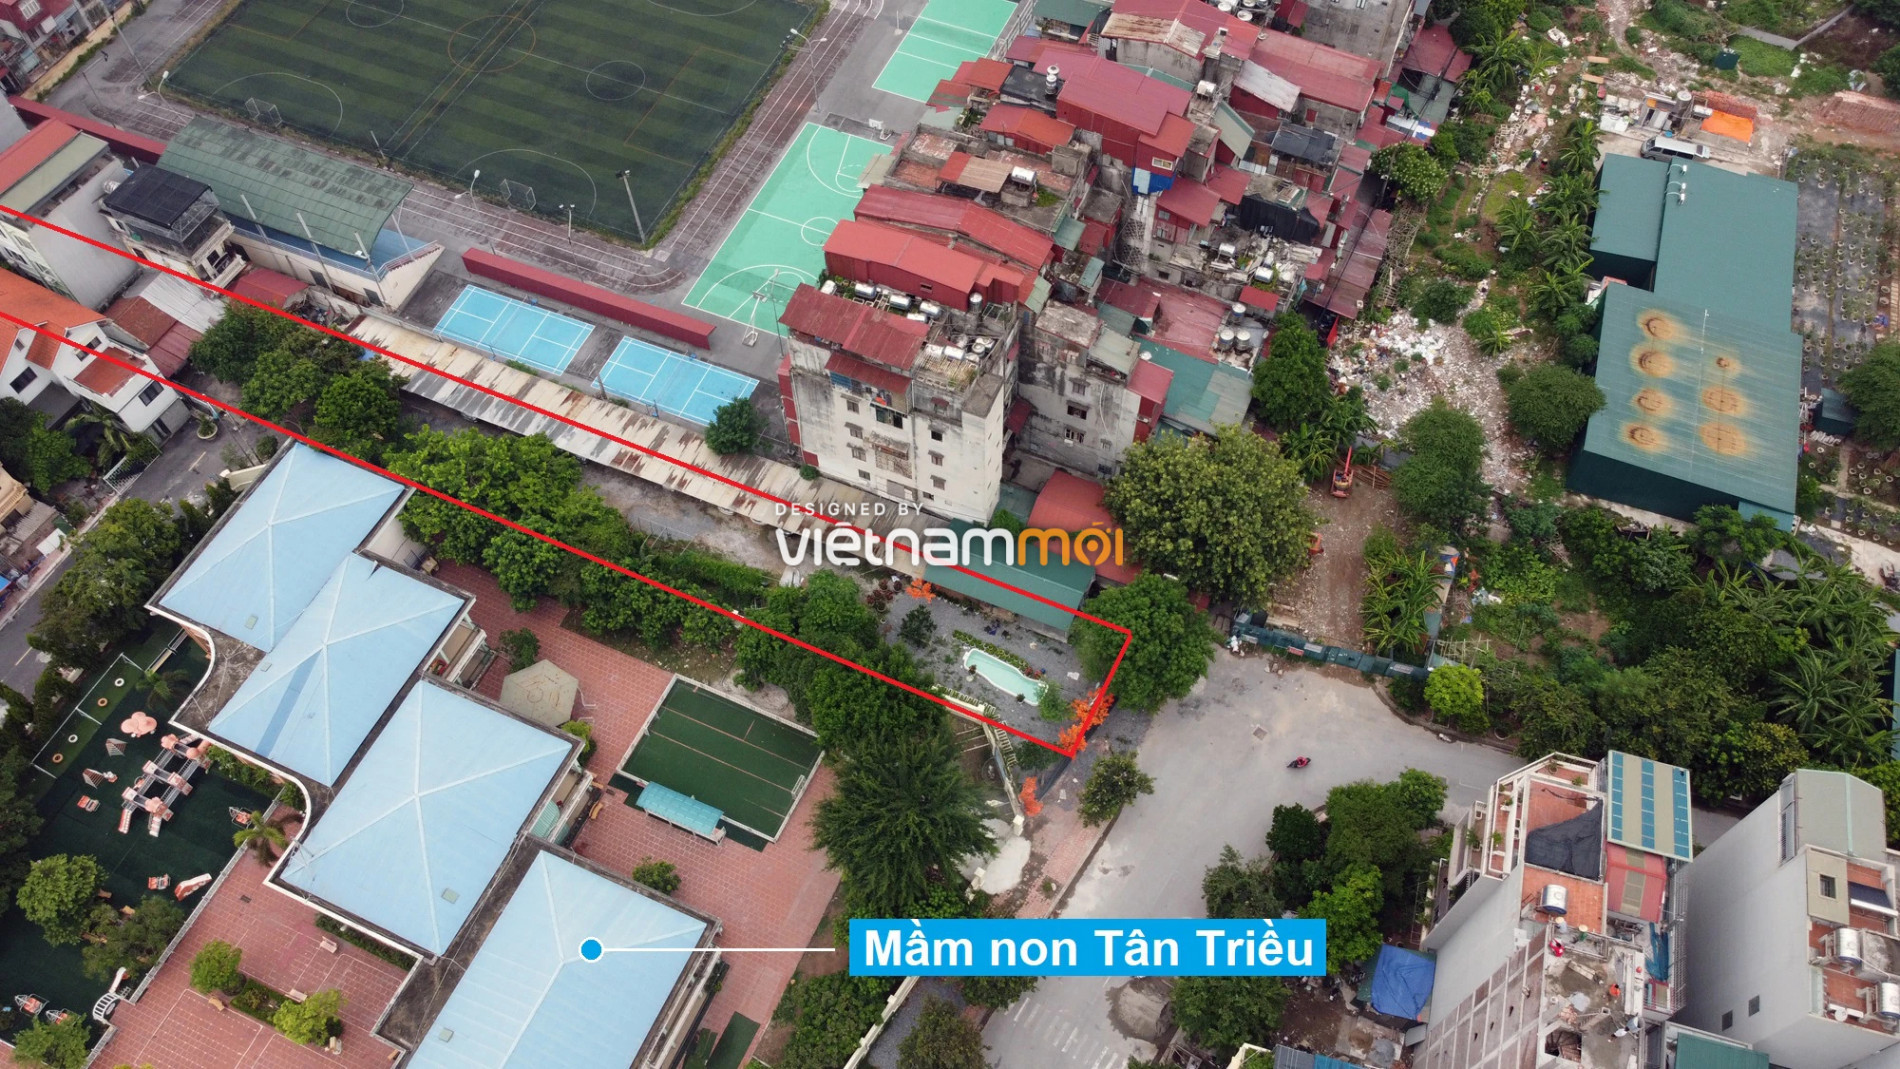 Những khu đất sắp thu hồi để mở đường ở xã Tân Triều, Thanh Trì, Hà Nội (phần 10) - Ảnh 3.